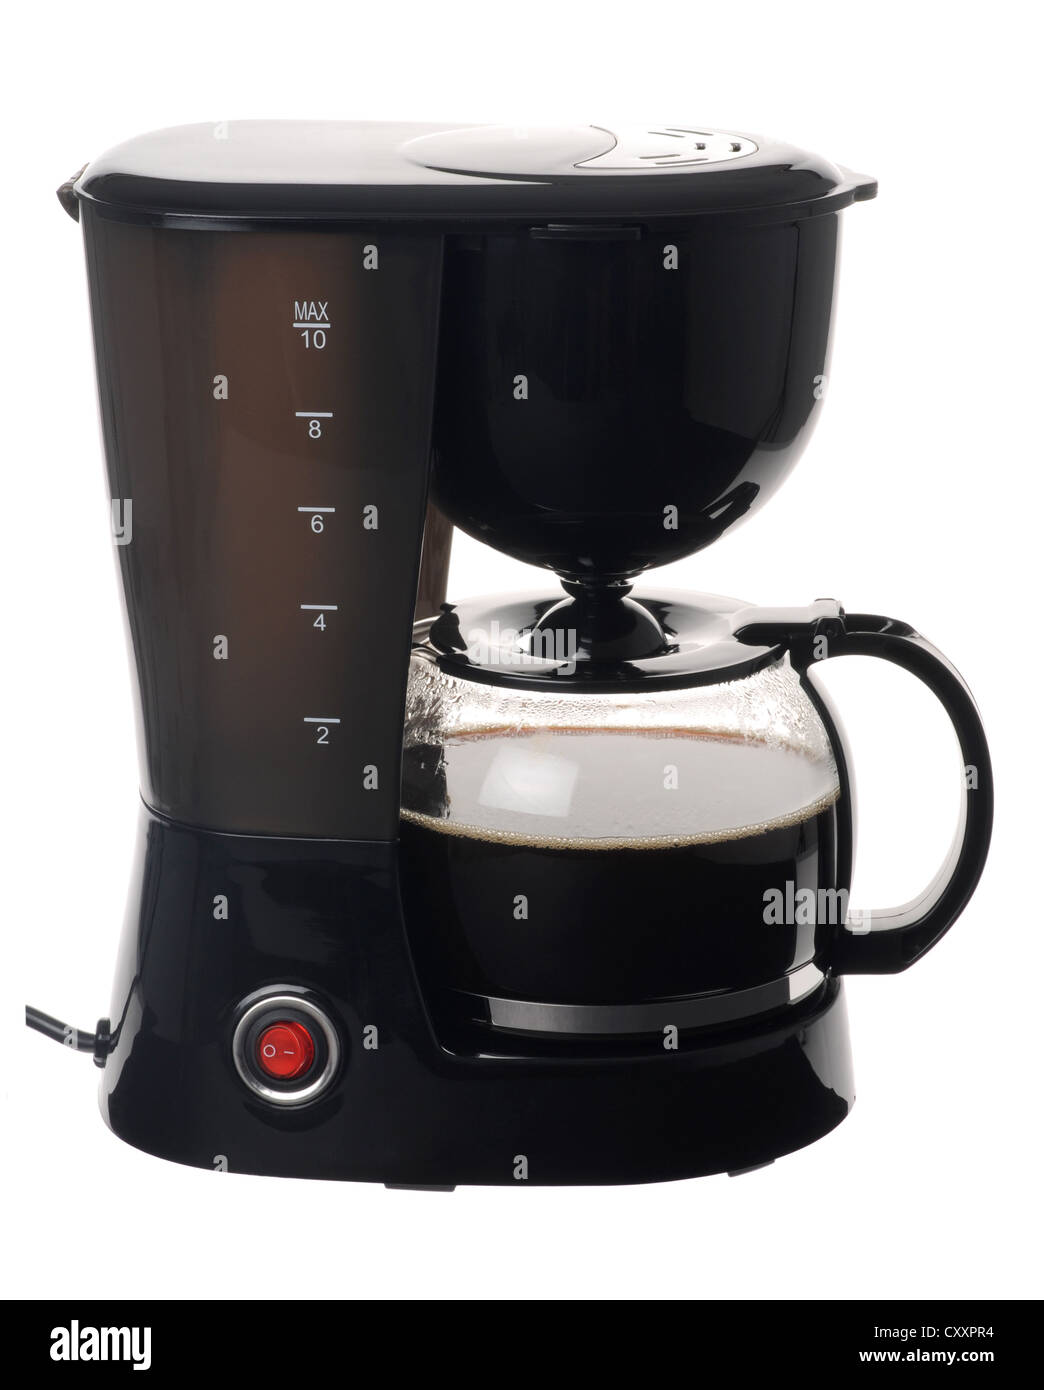 Macchina per caffè, macchina per caffè su fondo bianco, caffettiera elettrica Foto Stock